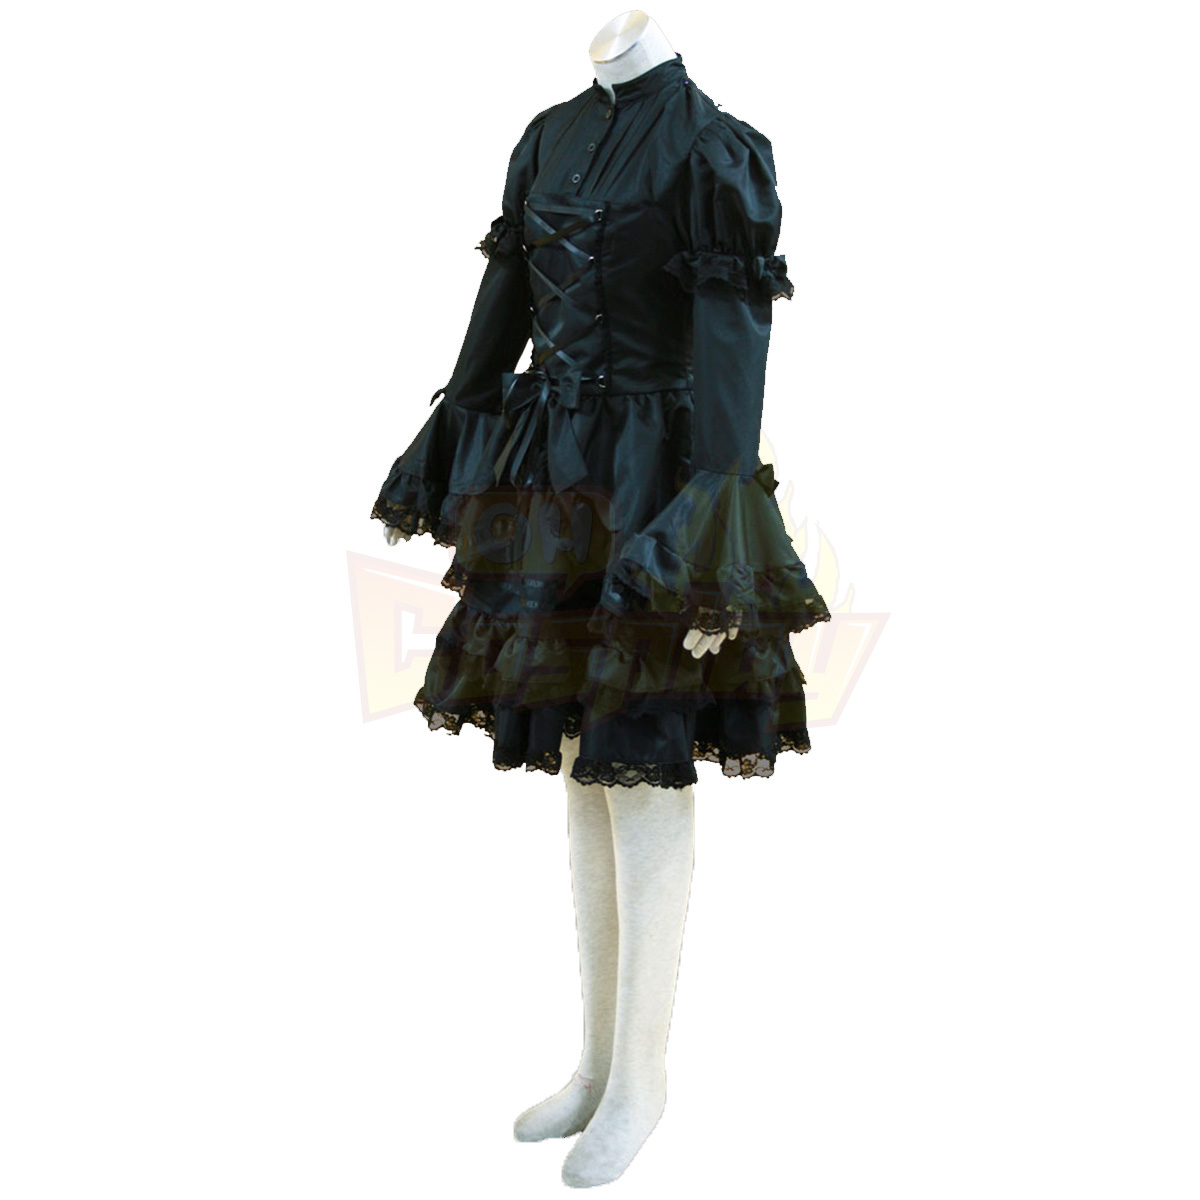 호화로운 로리타 문화 검은 및 화이트 민소매 짧은 드레스 코스프레